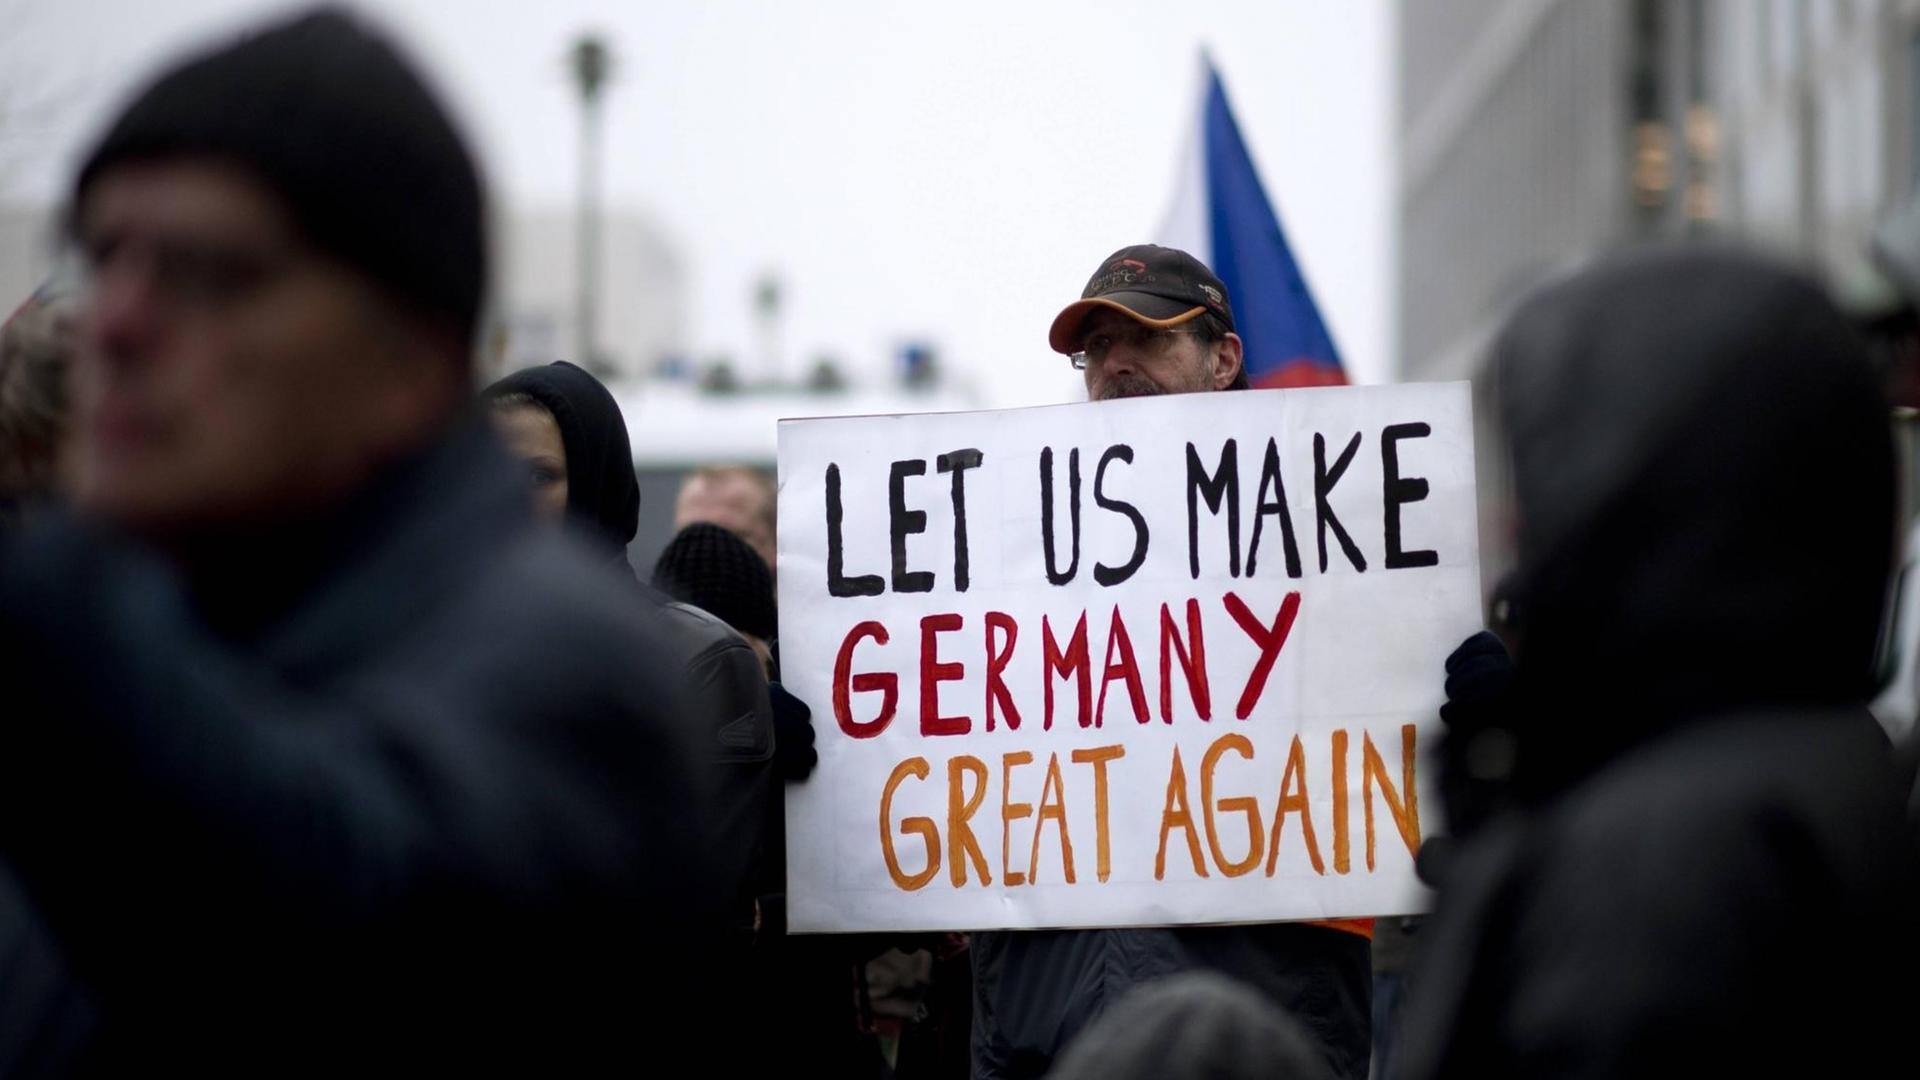 Ein Demonstrant der Bergida-Bewegung, einem Ableger von Pegida, hält ein Plakat mit der Aufschrift "Let us make Germany great again" am Hauptbahnhof im Regierungsviertel in Berlin.